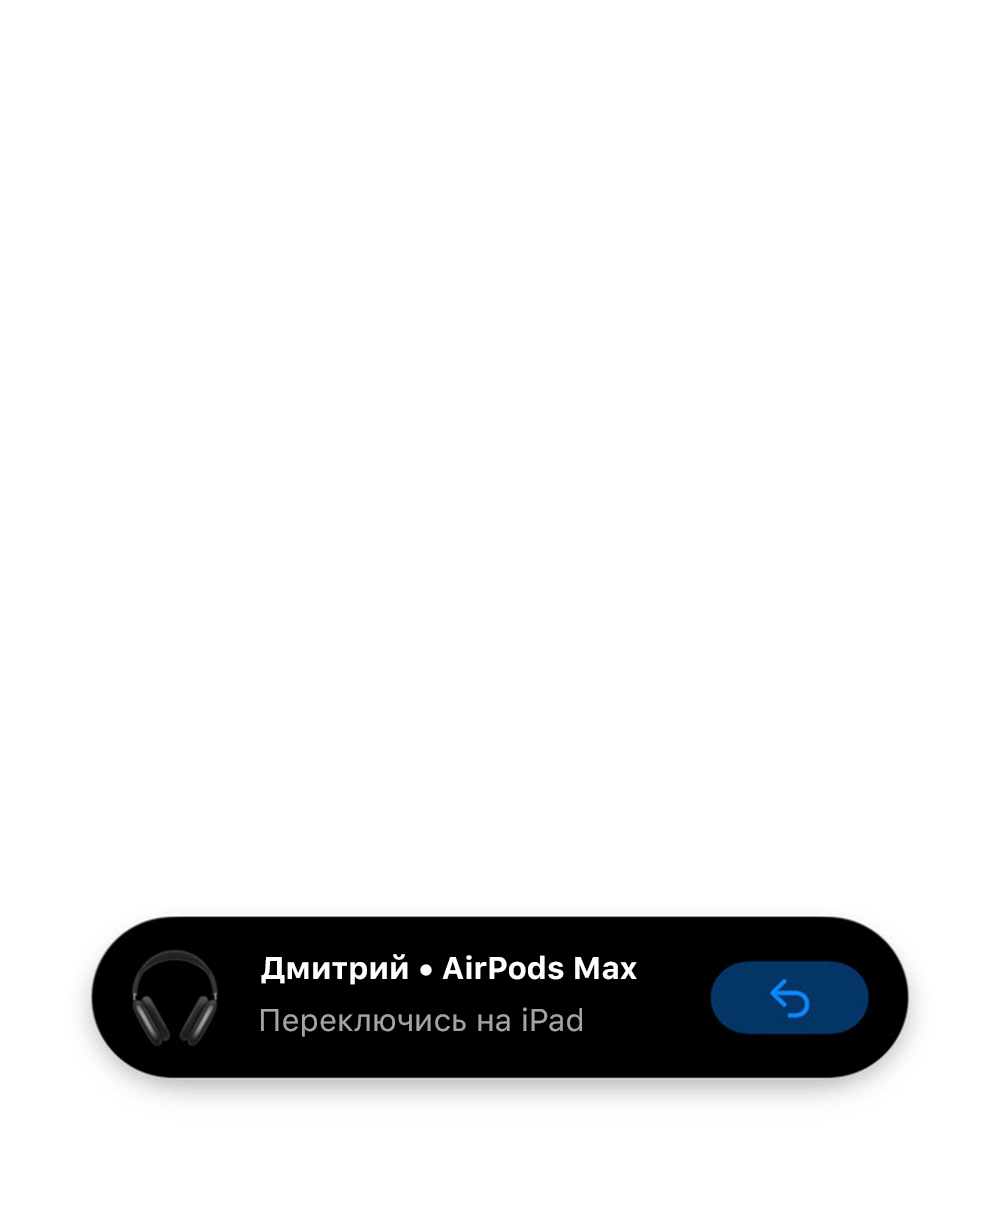 Автоматическое переключение AirPods между устройствами